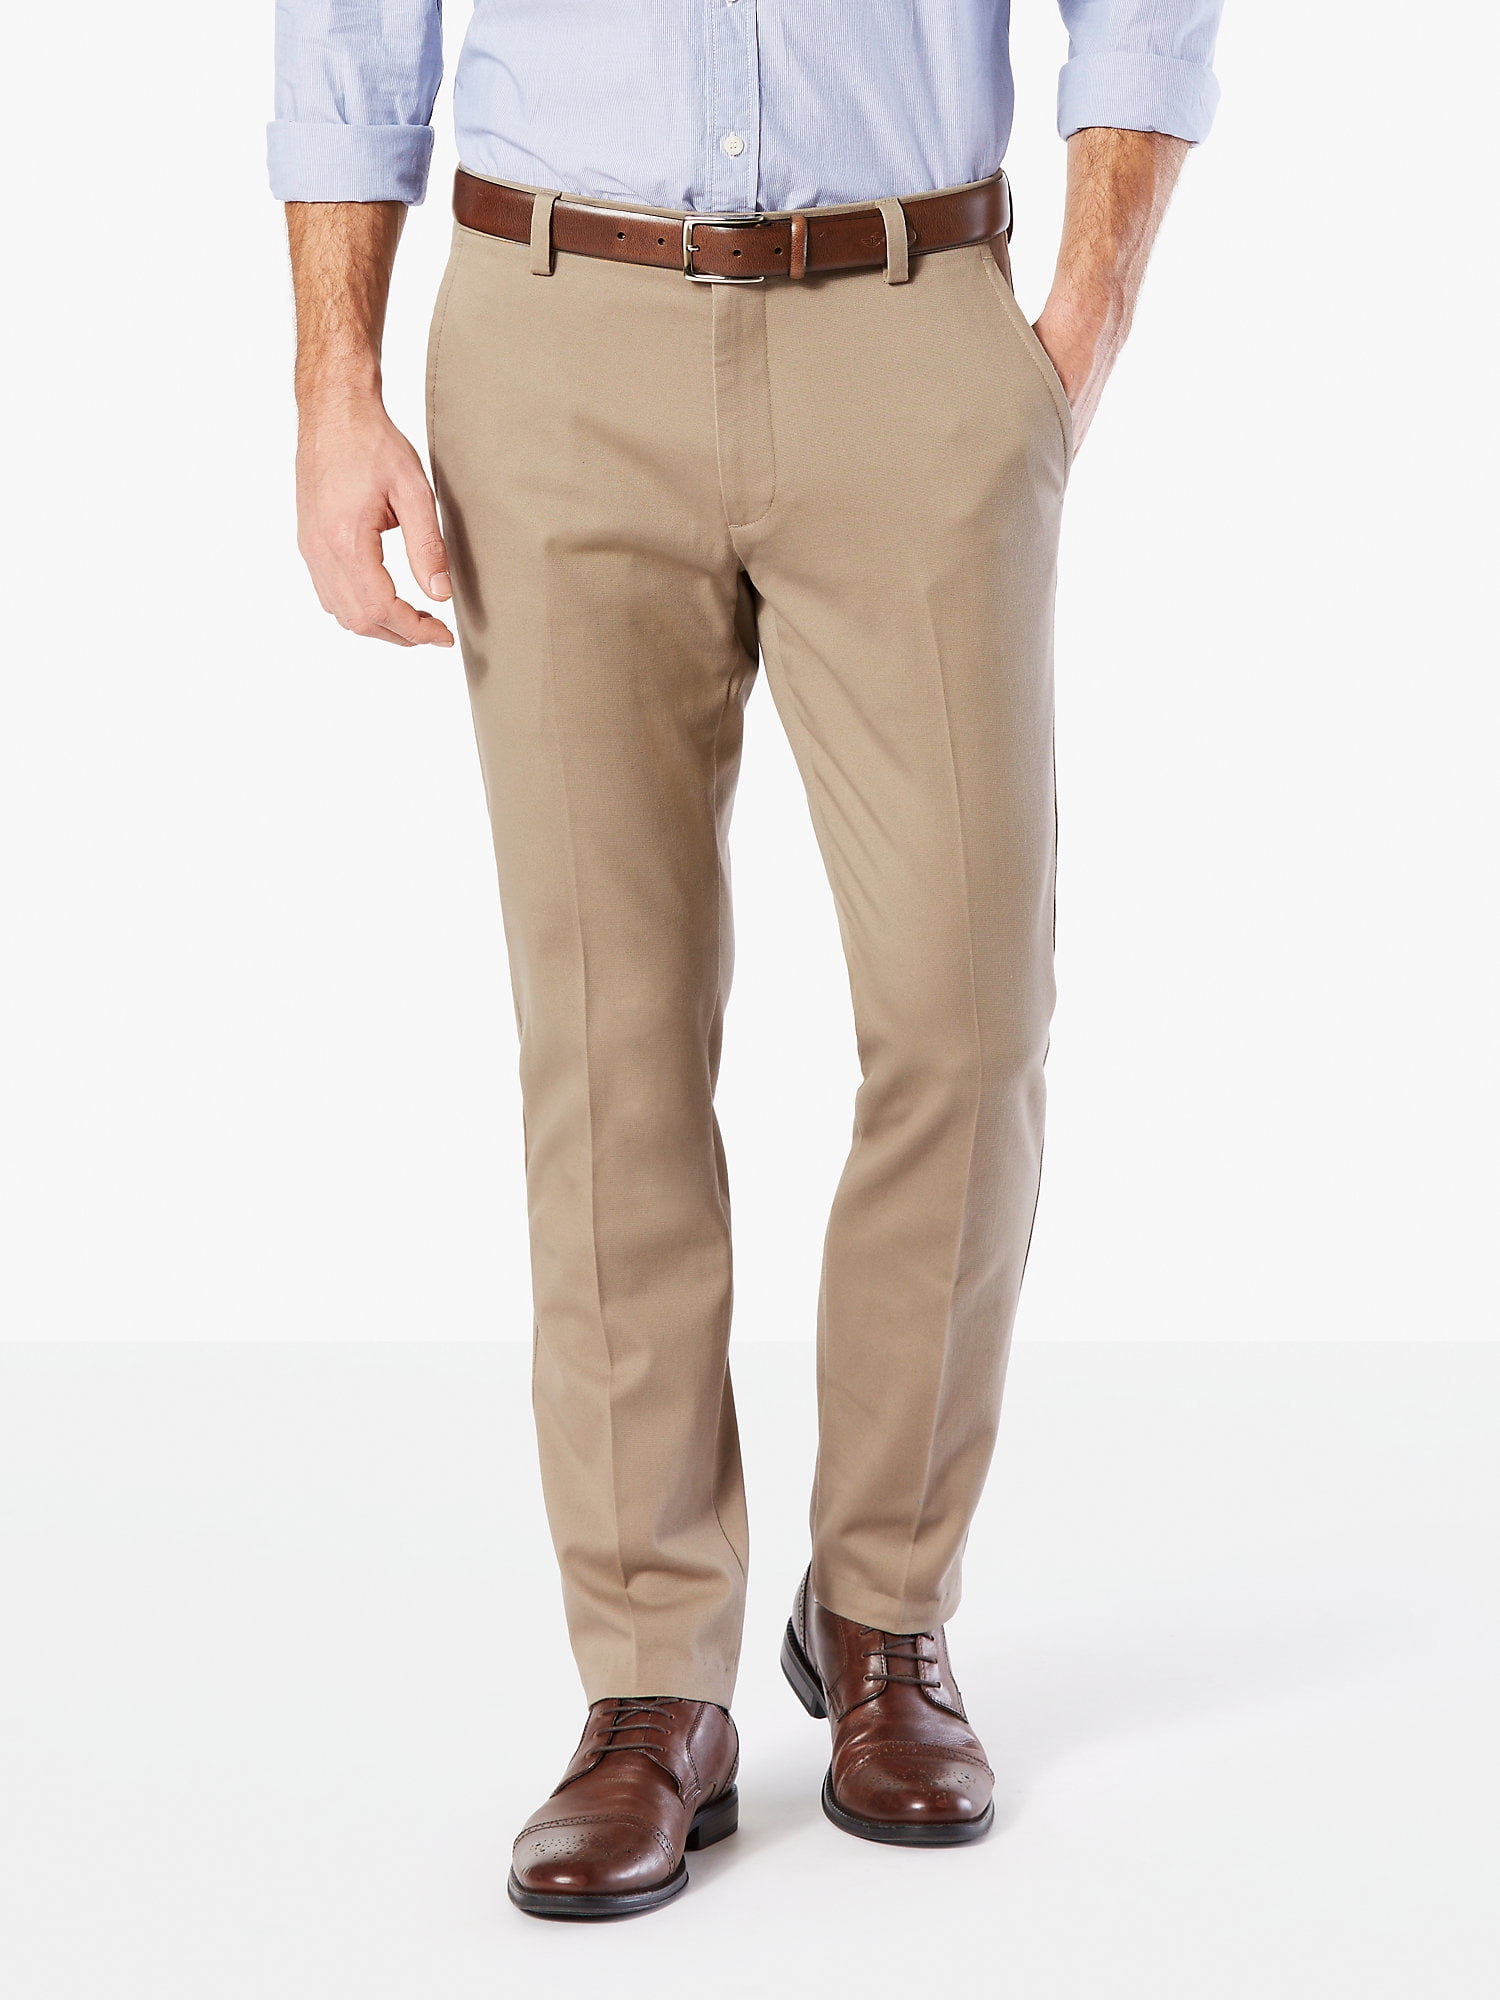 Dockers Men's Slim Fit Jean Cut All Seasons Tech Pants, Pembroke, 28W x 30L  : Amazon.co.uk: Fashion